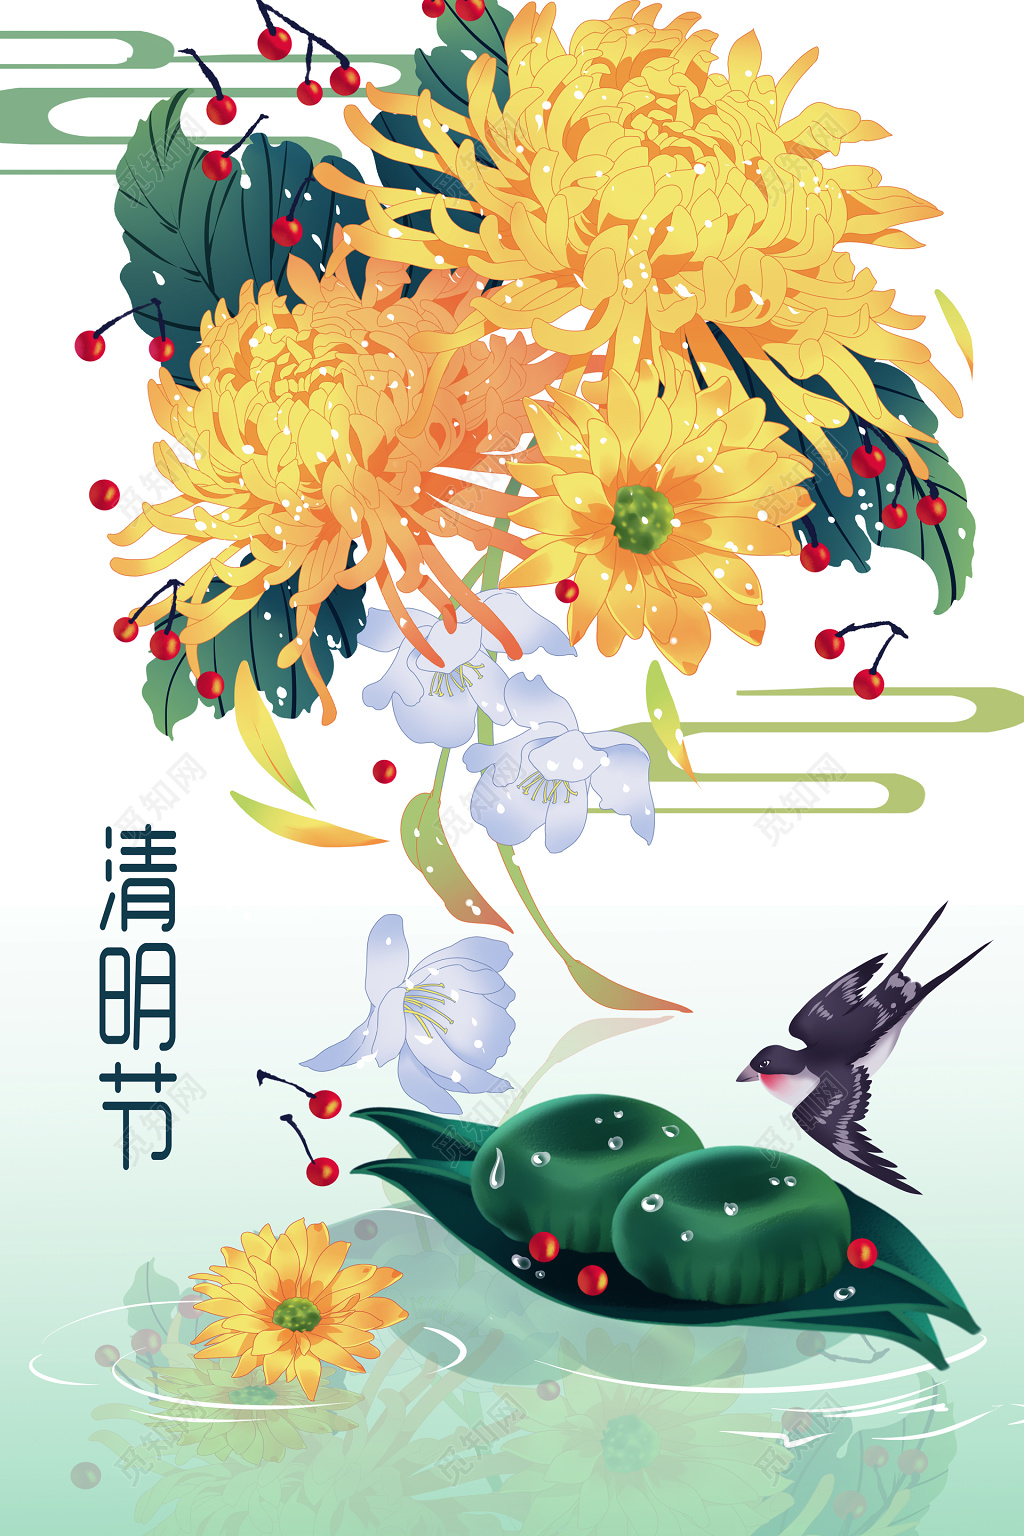 【清明时节】郁金香花开遍地锦 - 新影像风光 花粉俱乐部